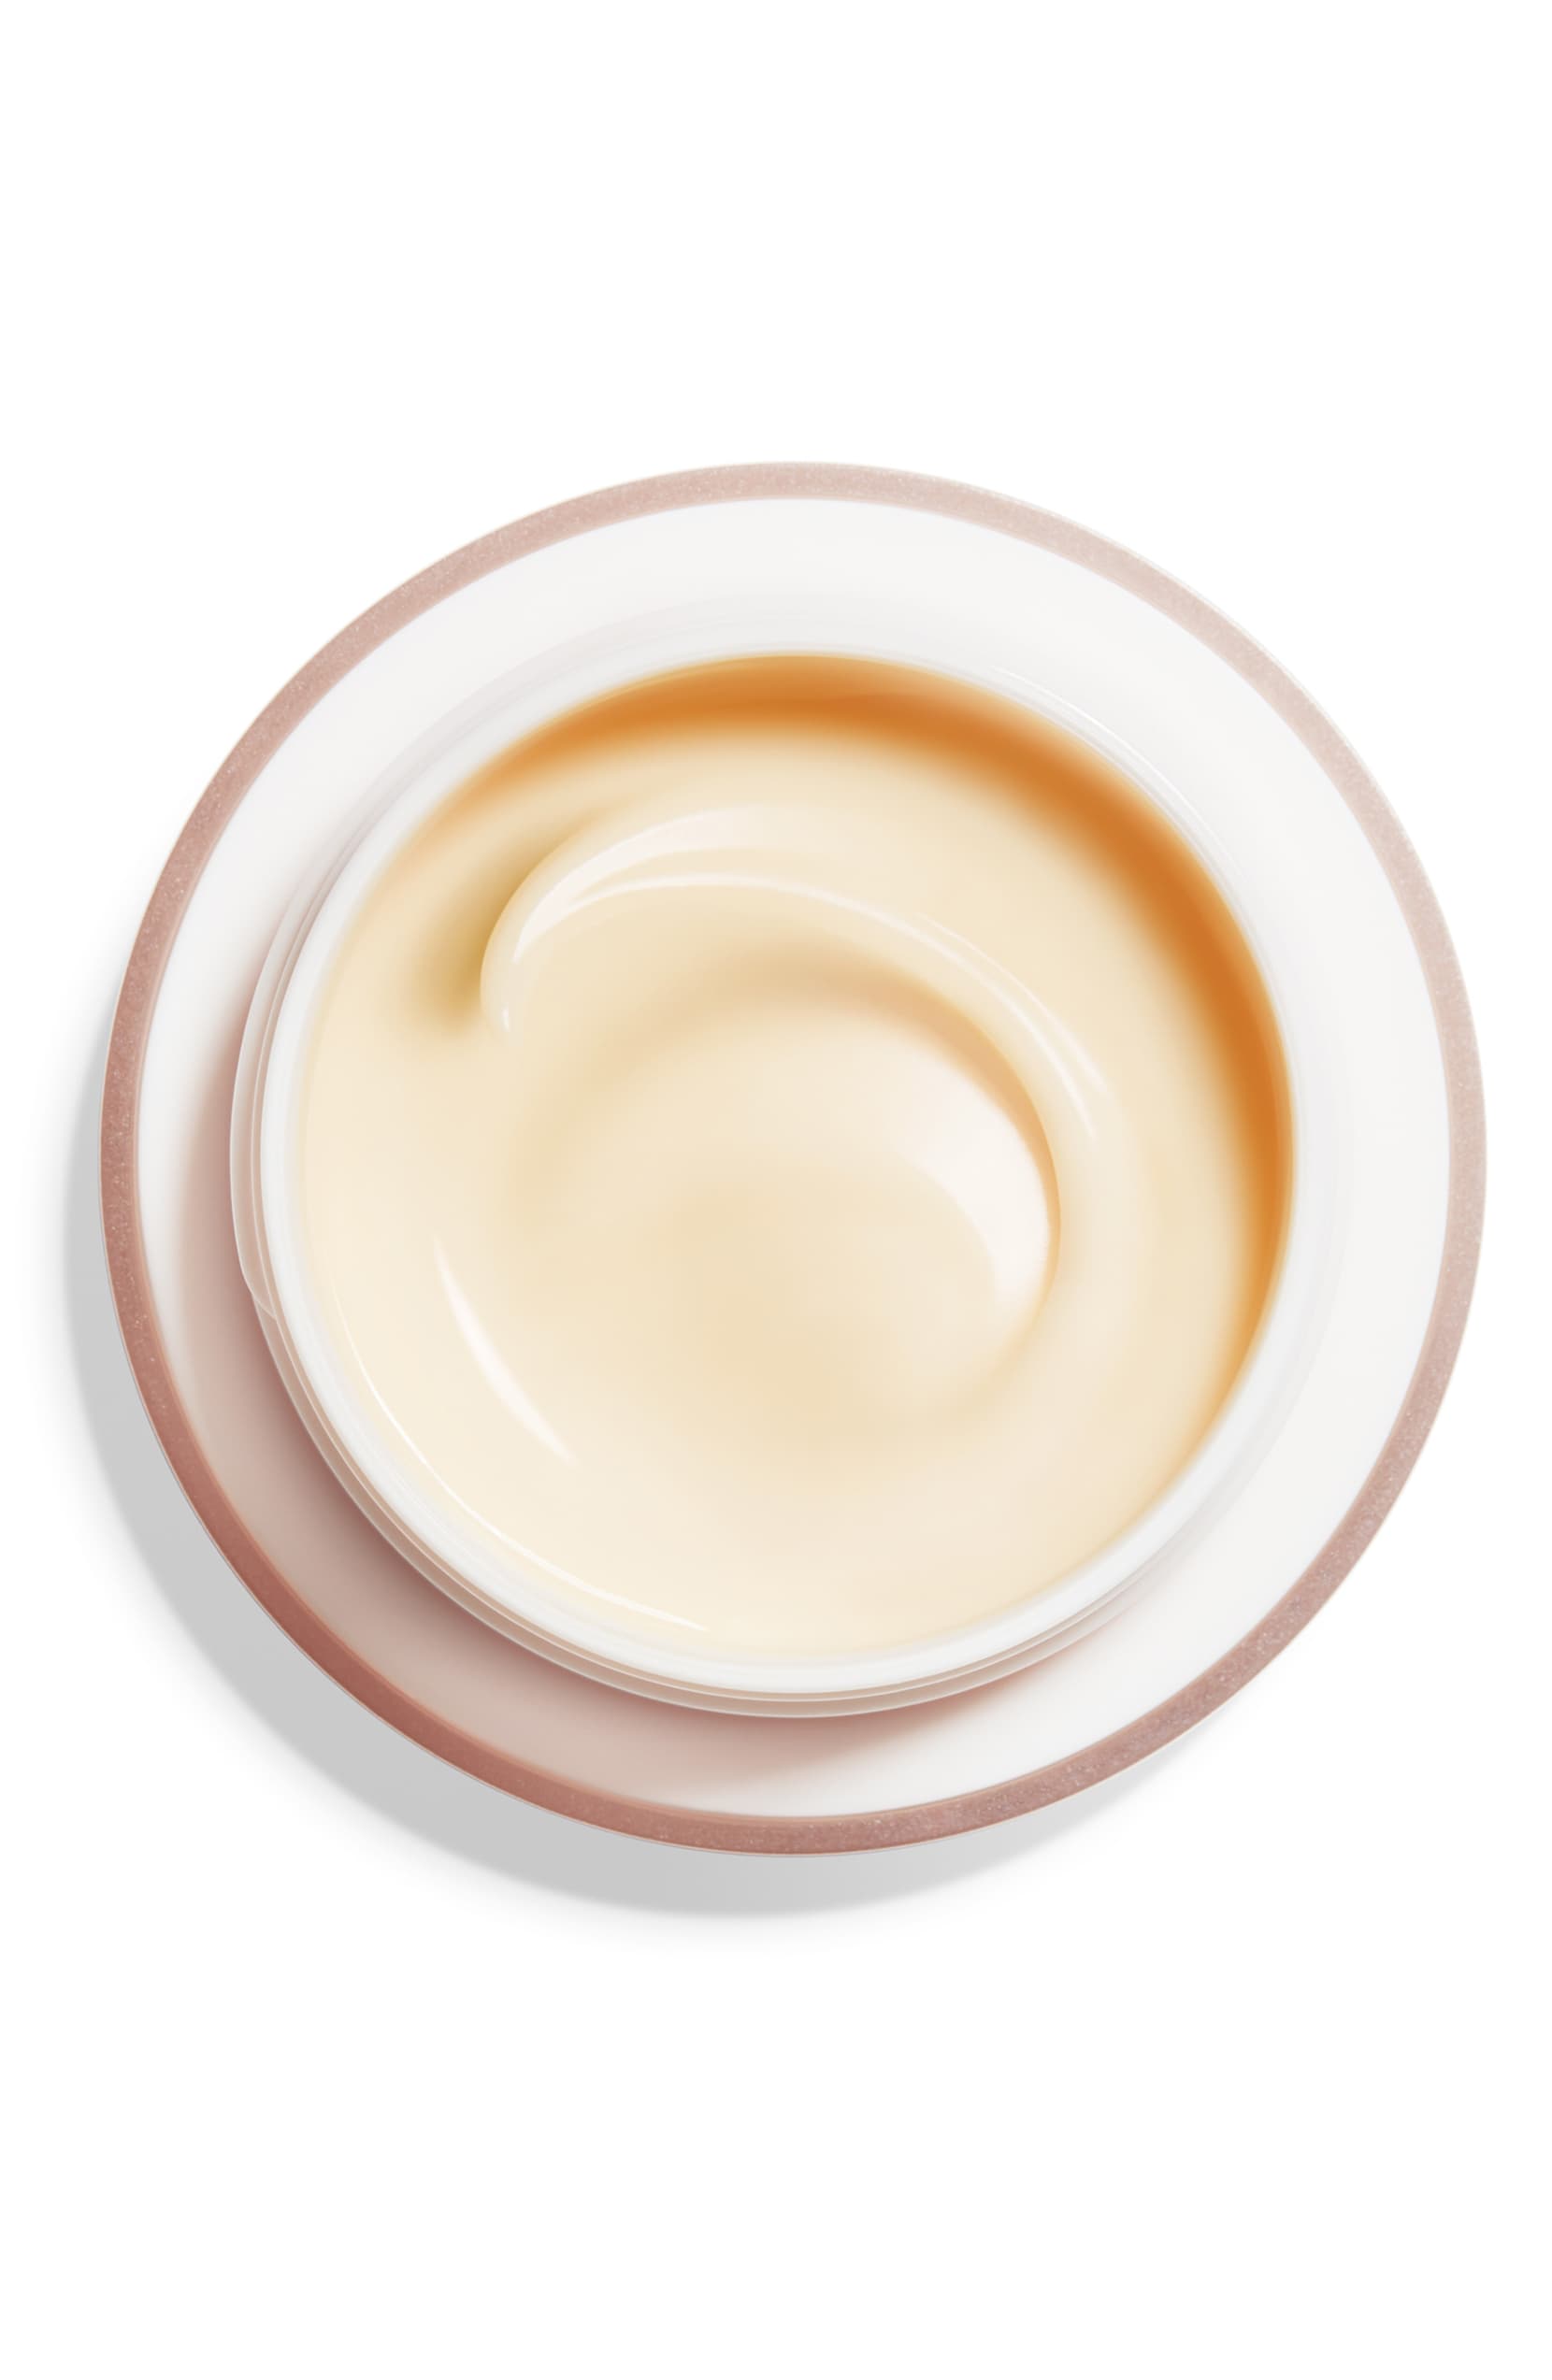 Shiseido Benefiance Wrinkle Smoothing Cream, 50 ml - eCosmeticWorld